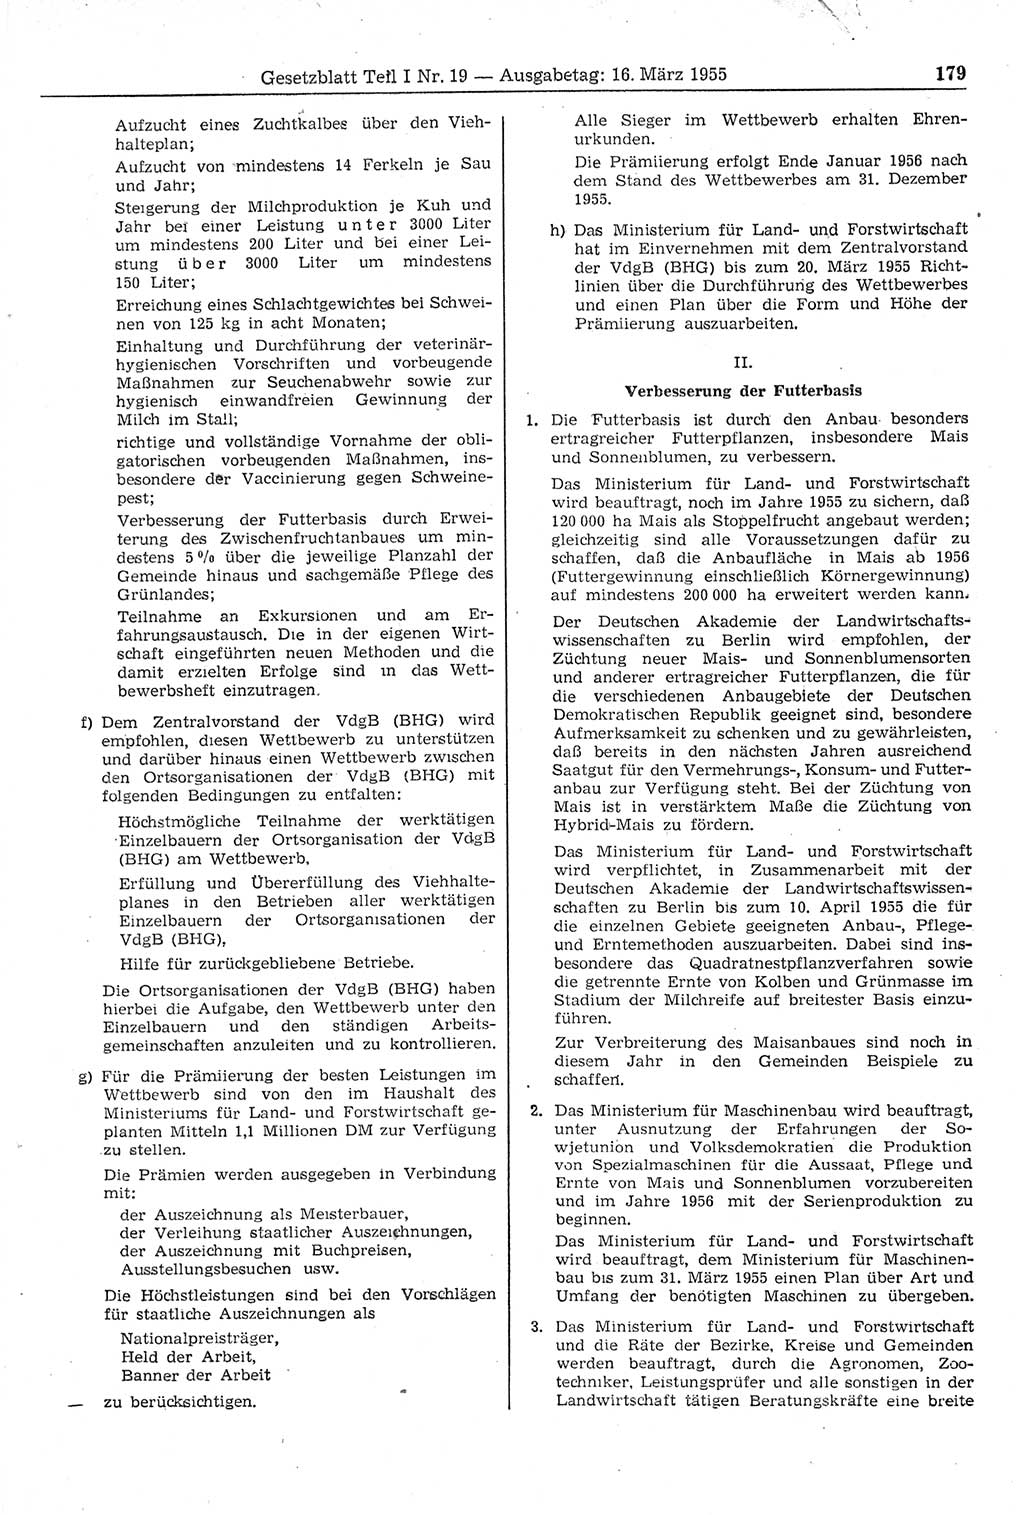 Gesetzblatt (GBl.) der Deutschen Demokratischen Republik (DDR) Teil Ⅰ 1955, Seite 179 (GBl. DDR Ⅰ 1955, S. 179)